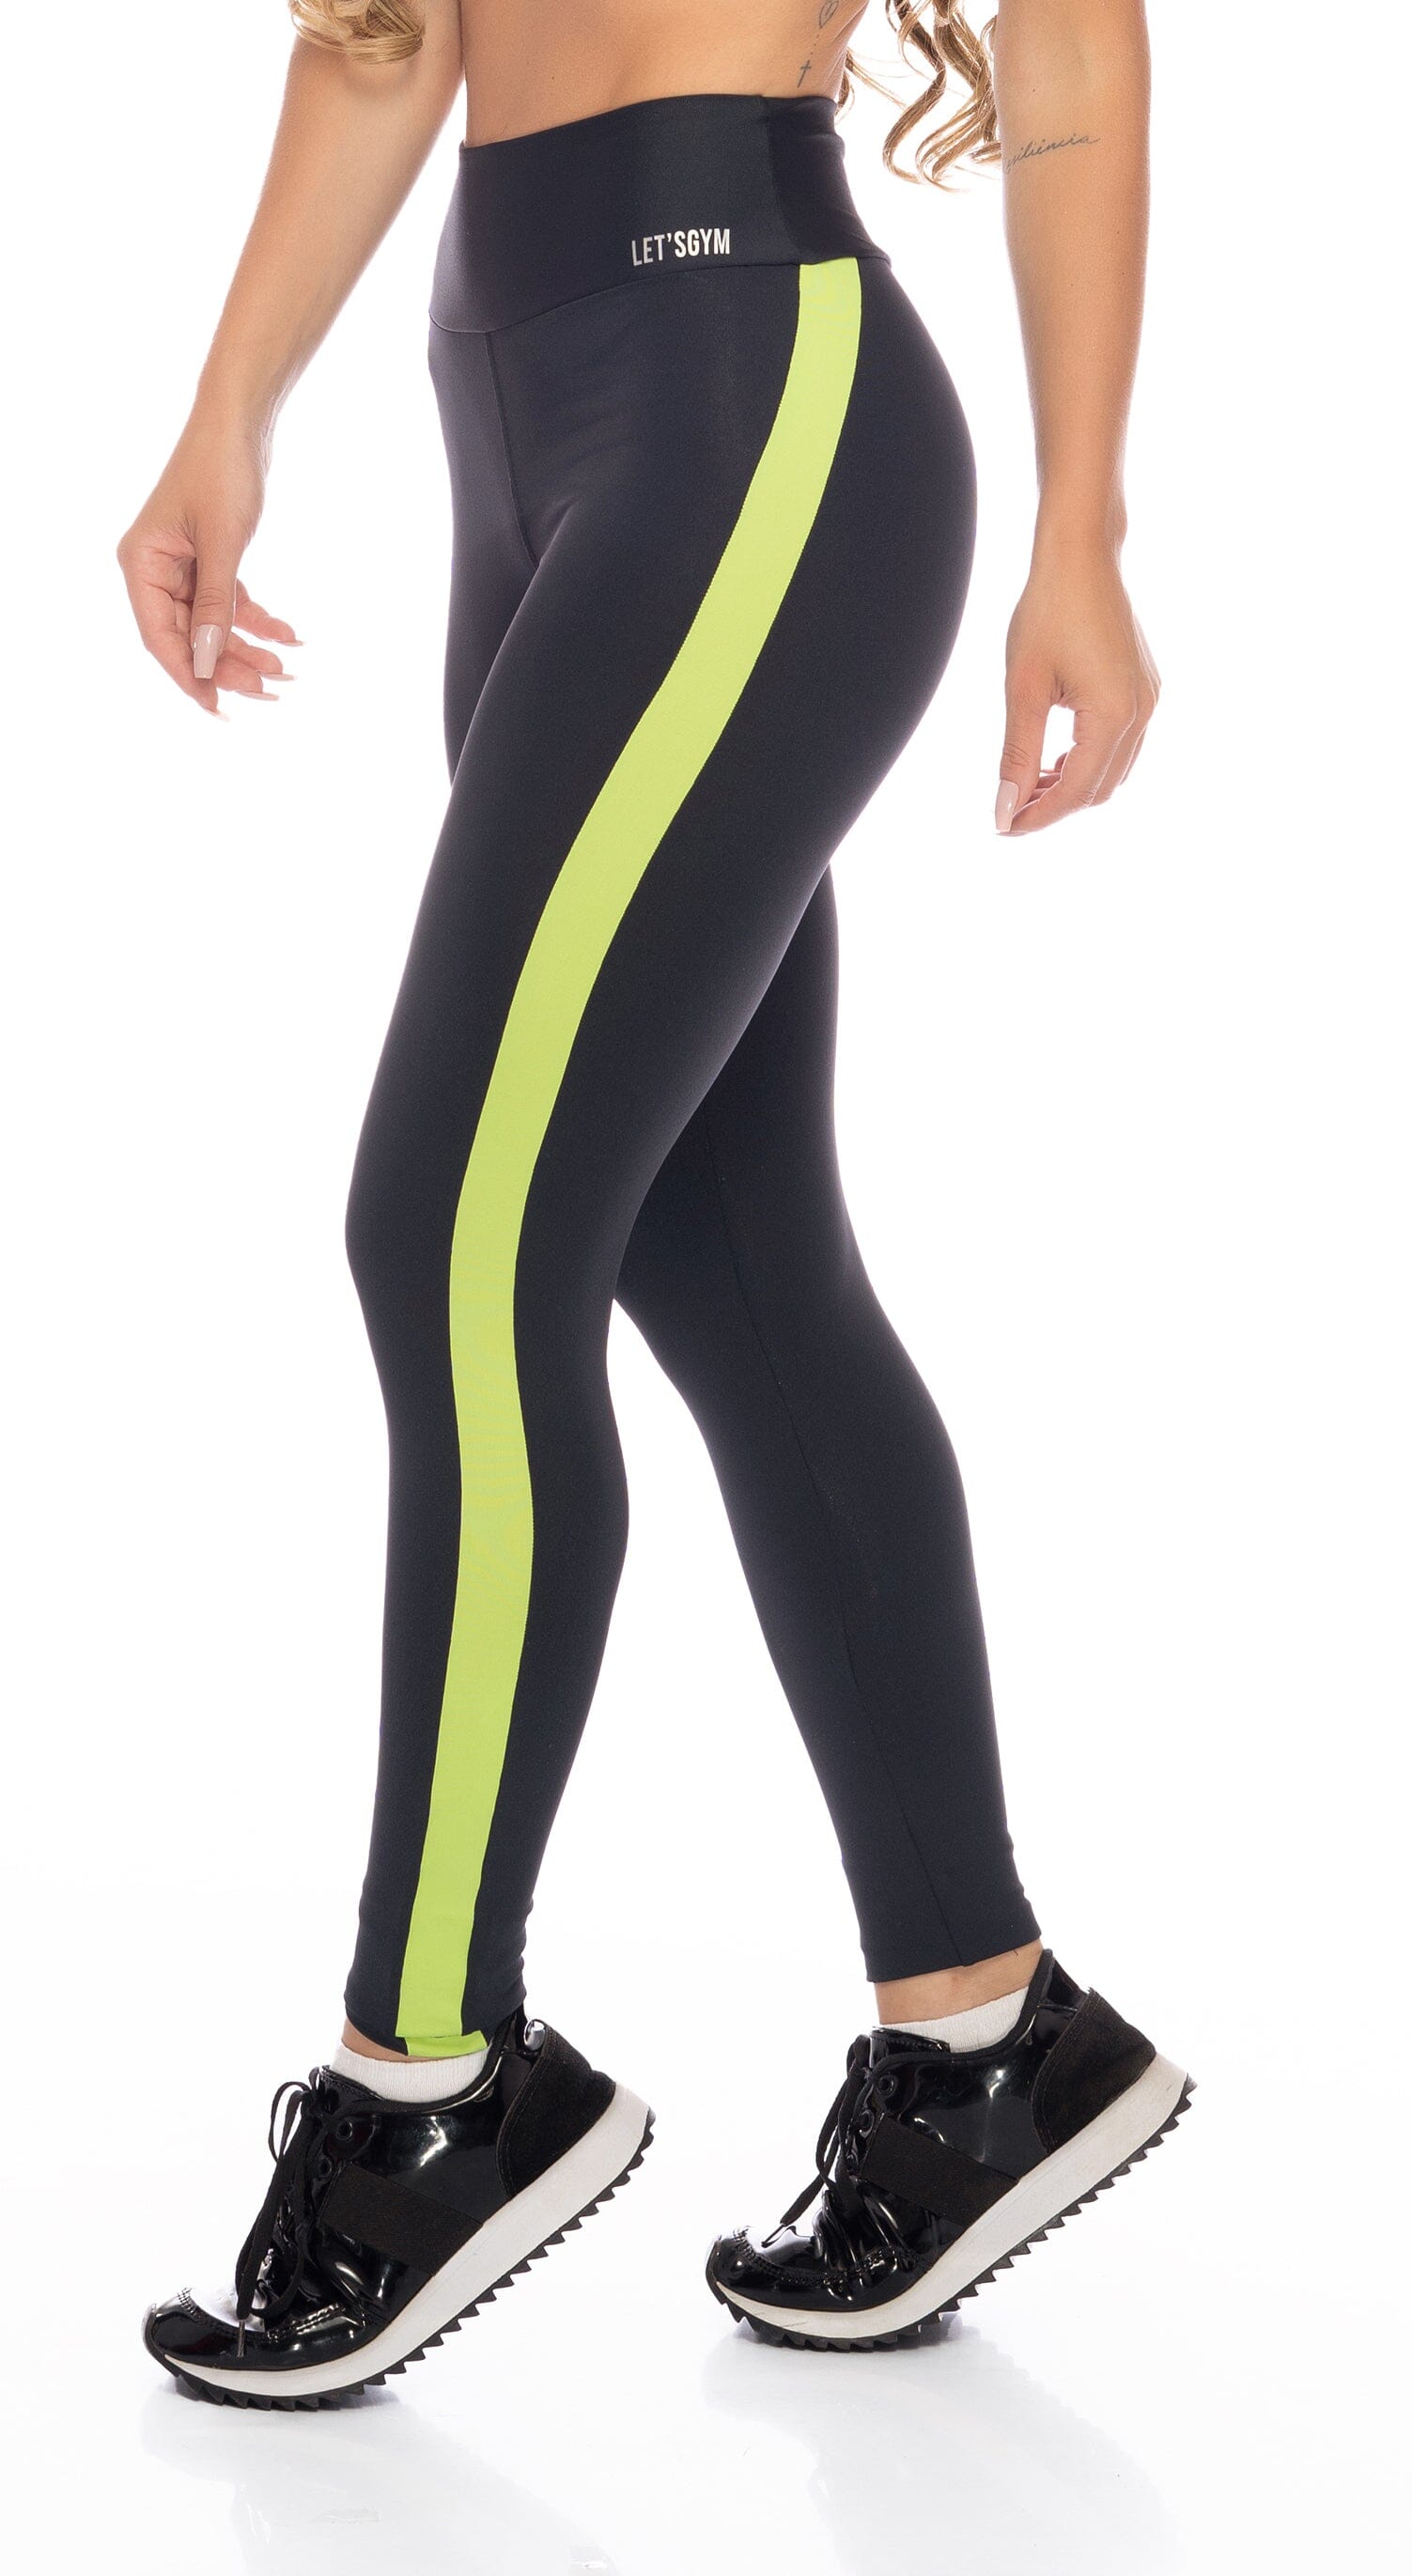 Women's High Waist, Full Length Leggings - Legging Line Black and Neon  Green Stripe